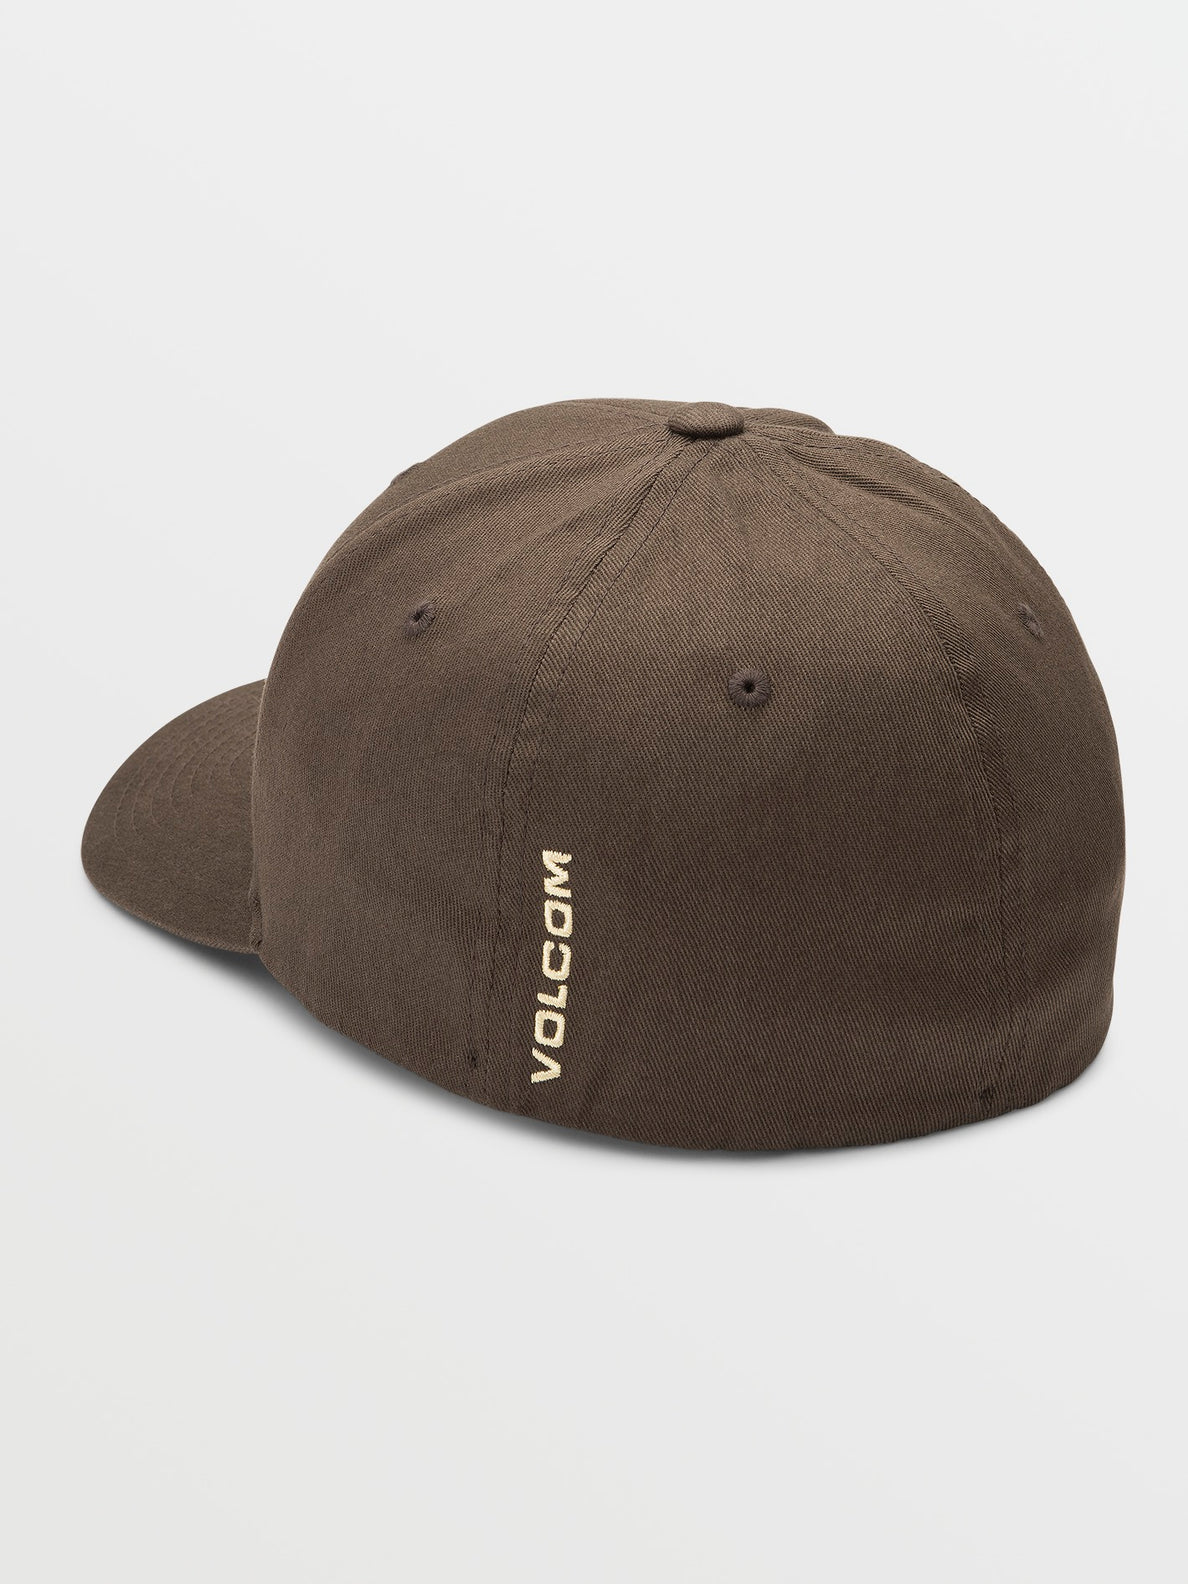 Full – Mud Hat Volcom Stone - US Flexfit